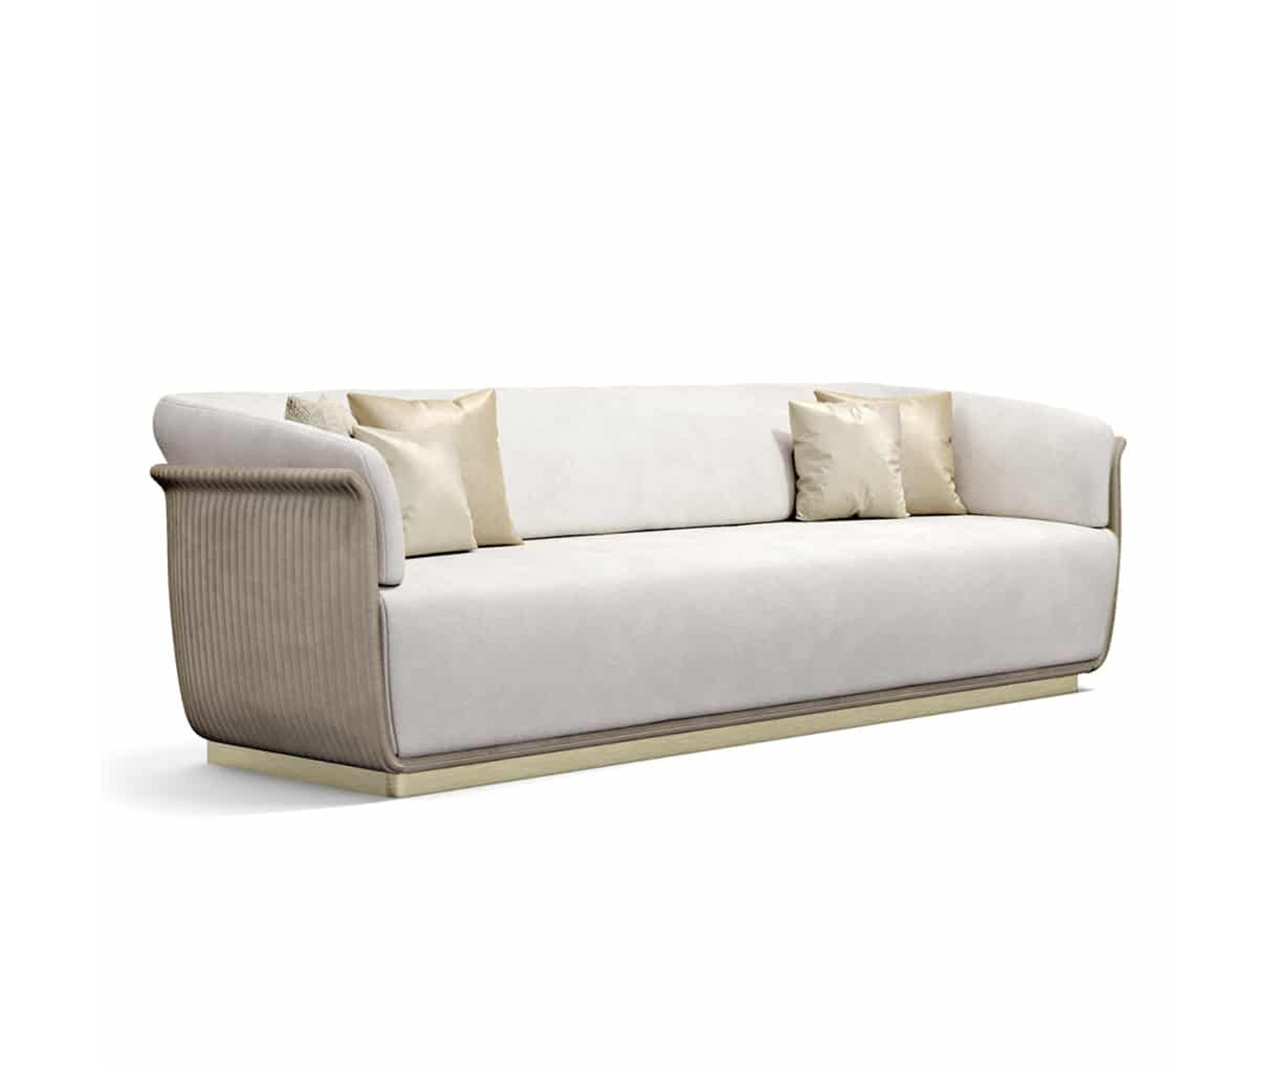 Upholstered White Sofa